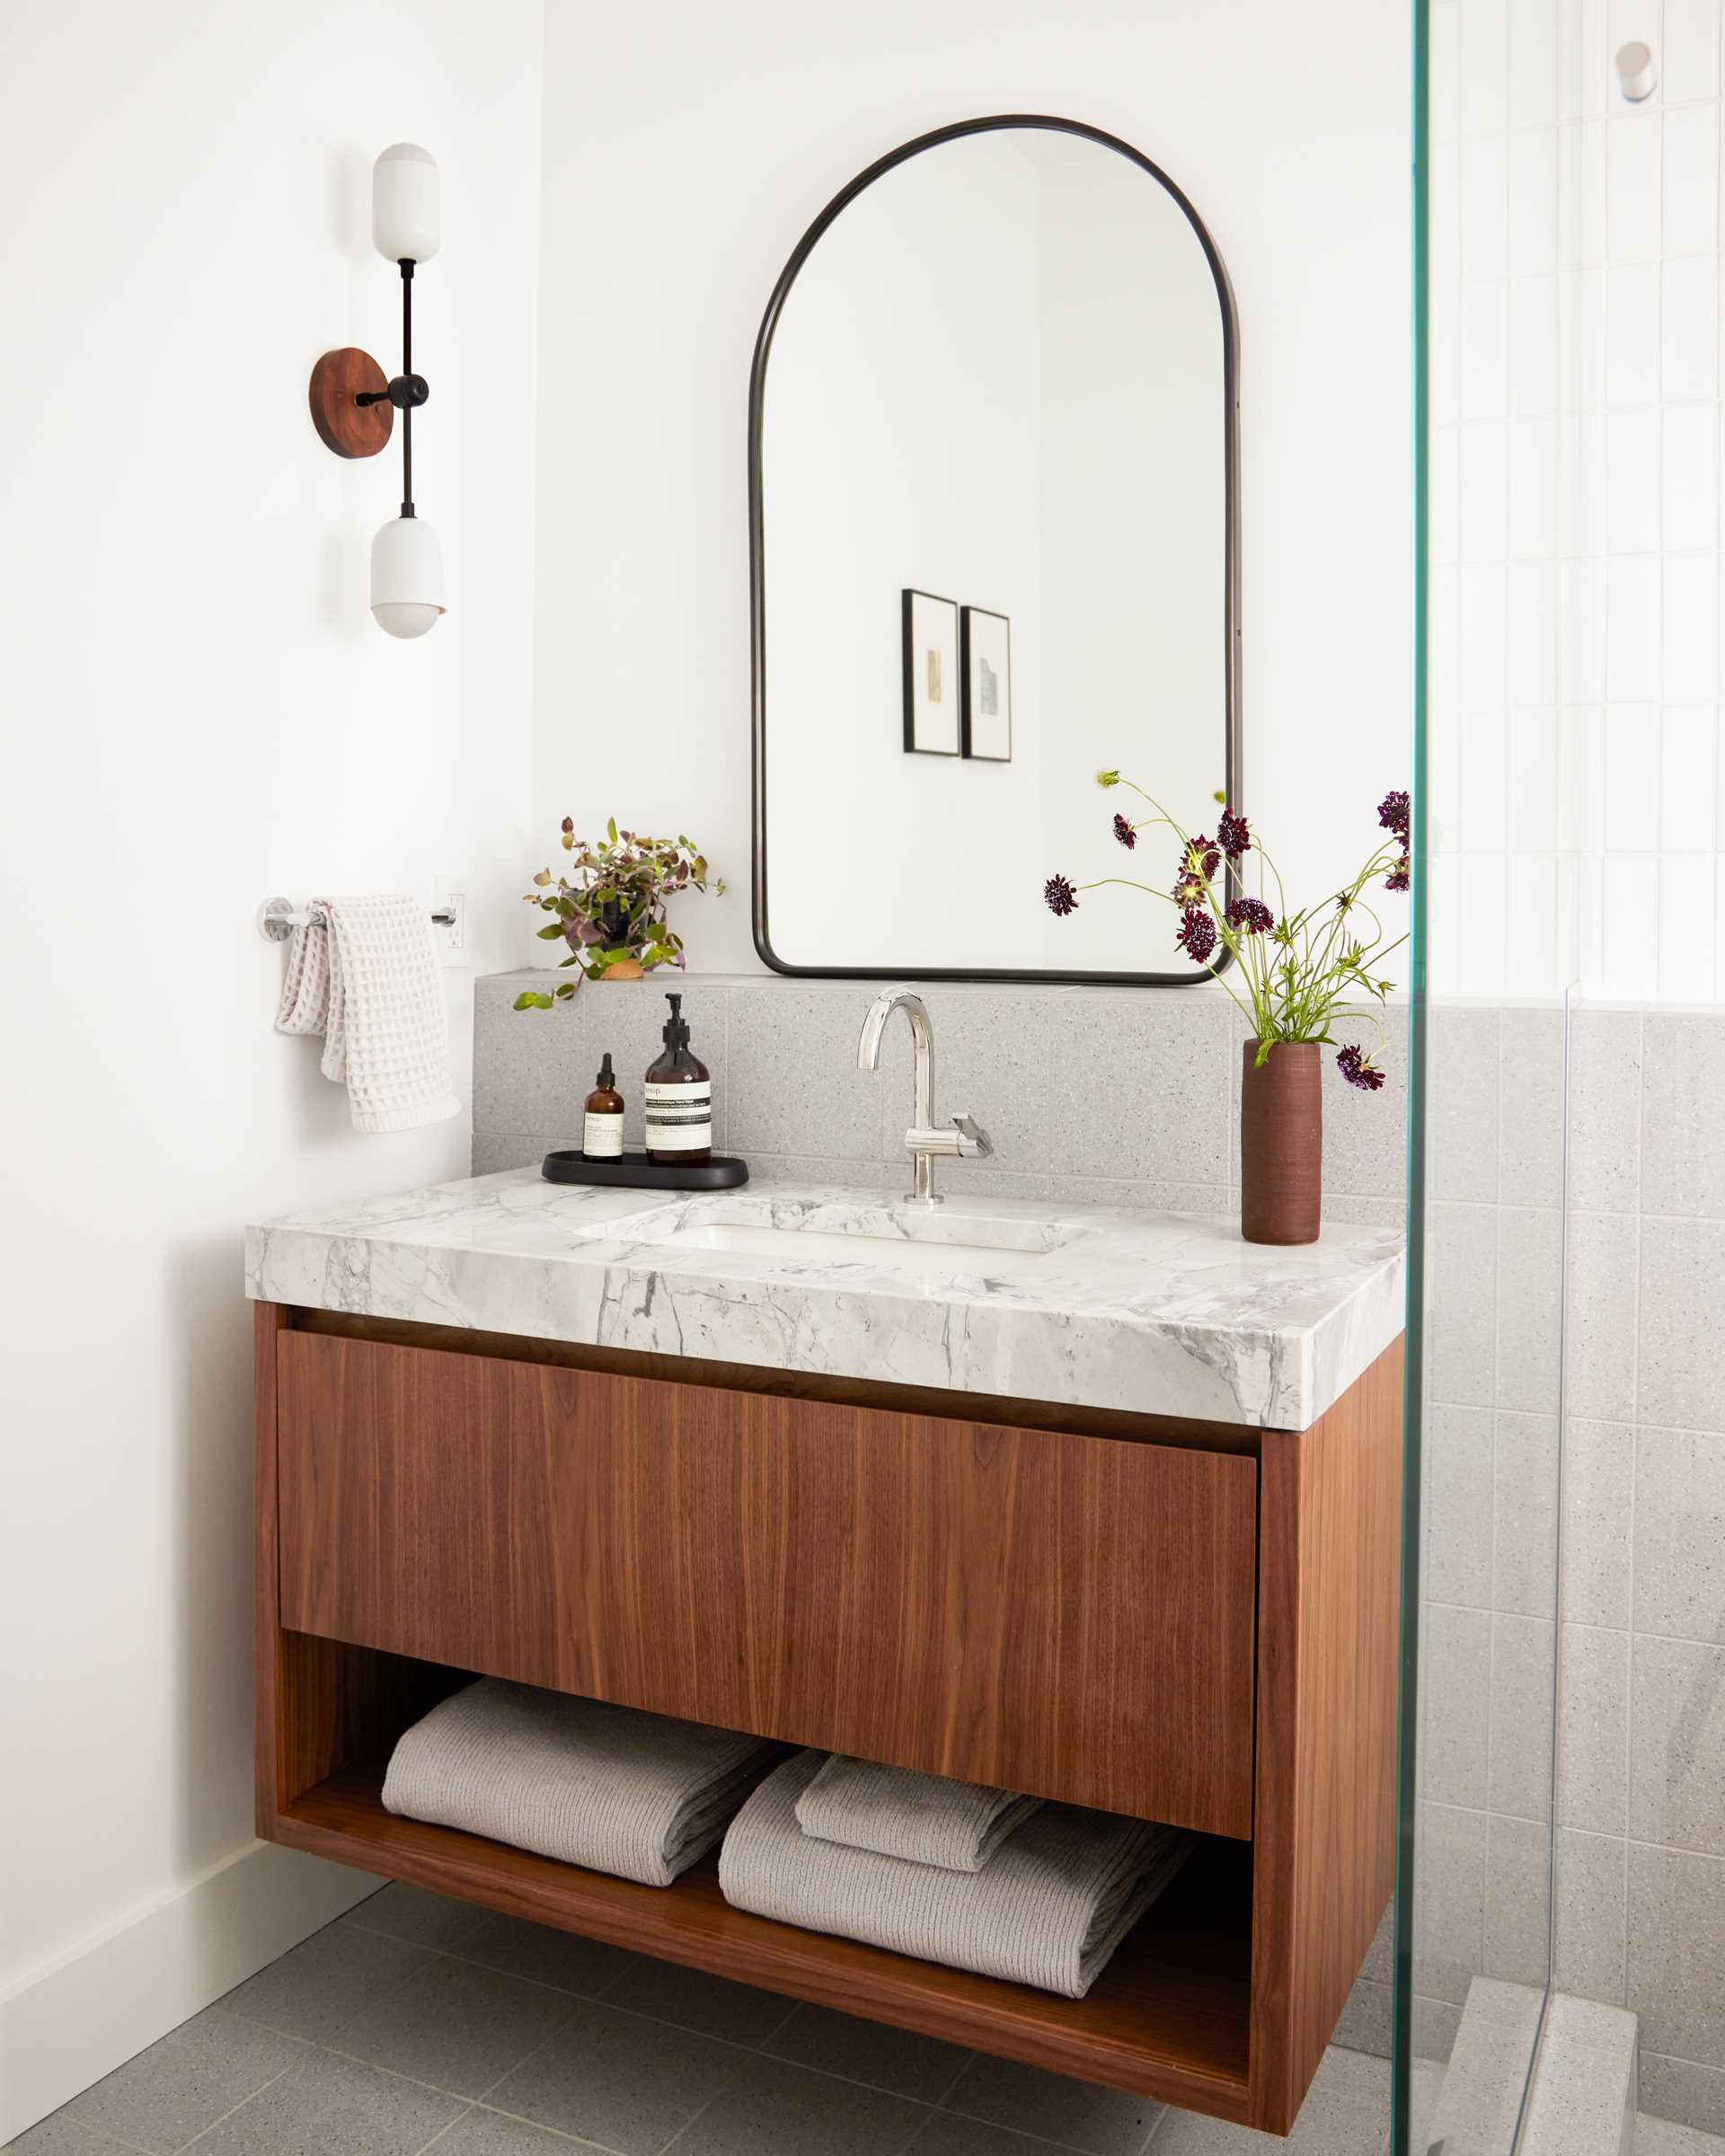 یک حمام بازسازی‌شده شامل یک روشویی چوبی جدید با یک کشو بزرگ است و یک قفسه زیر آن با یک میز ضخیم با سینک زیر کوه پوشانده شده است، در حالی که یک لبه زیر آینه به سمت دوش می‌رود.